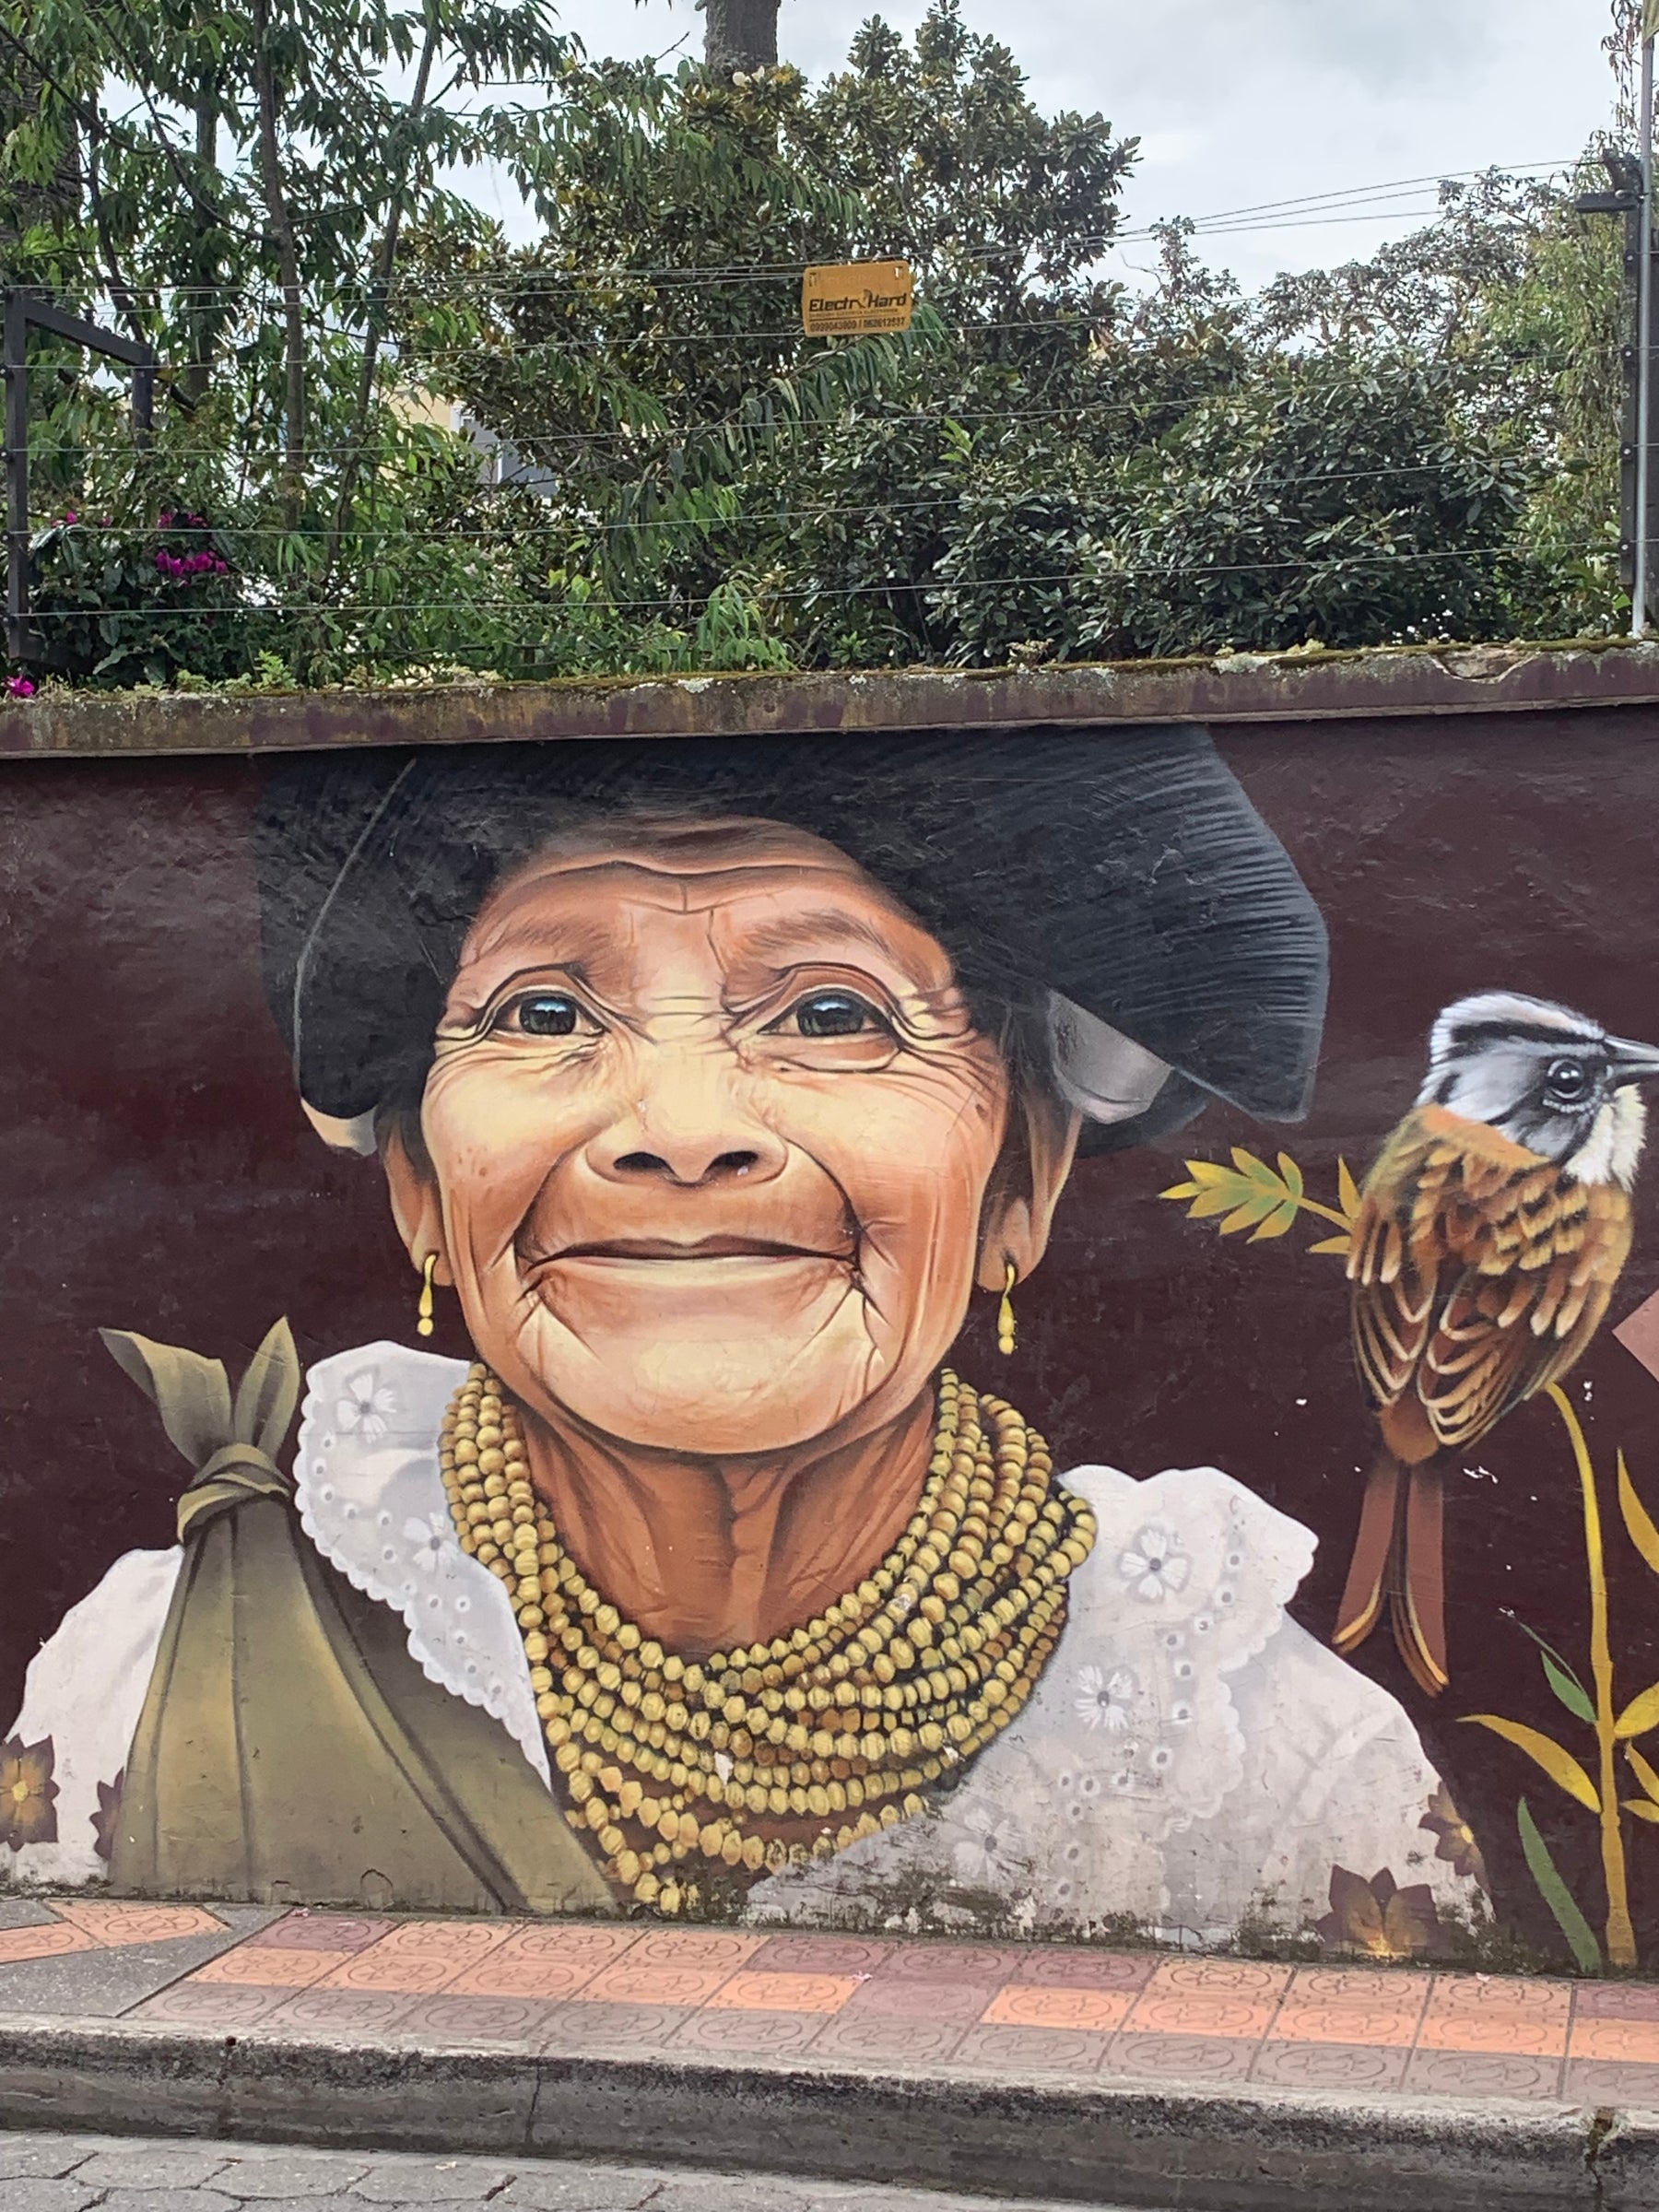 Ecuador street art depicting a smiling indigenous woman.